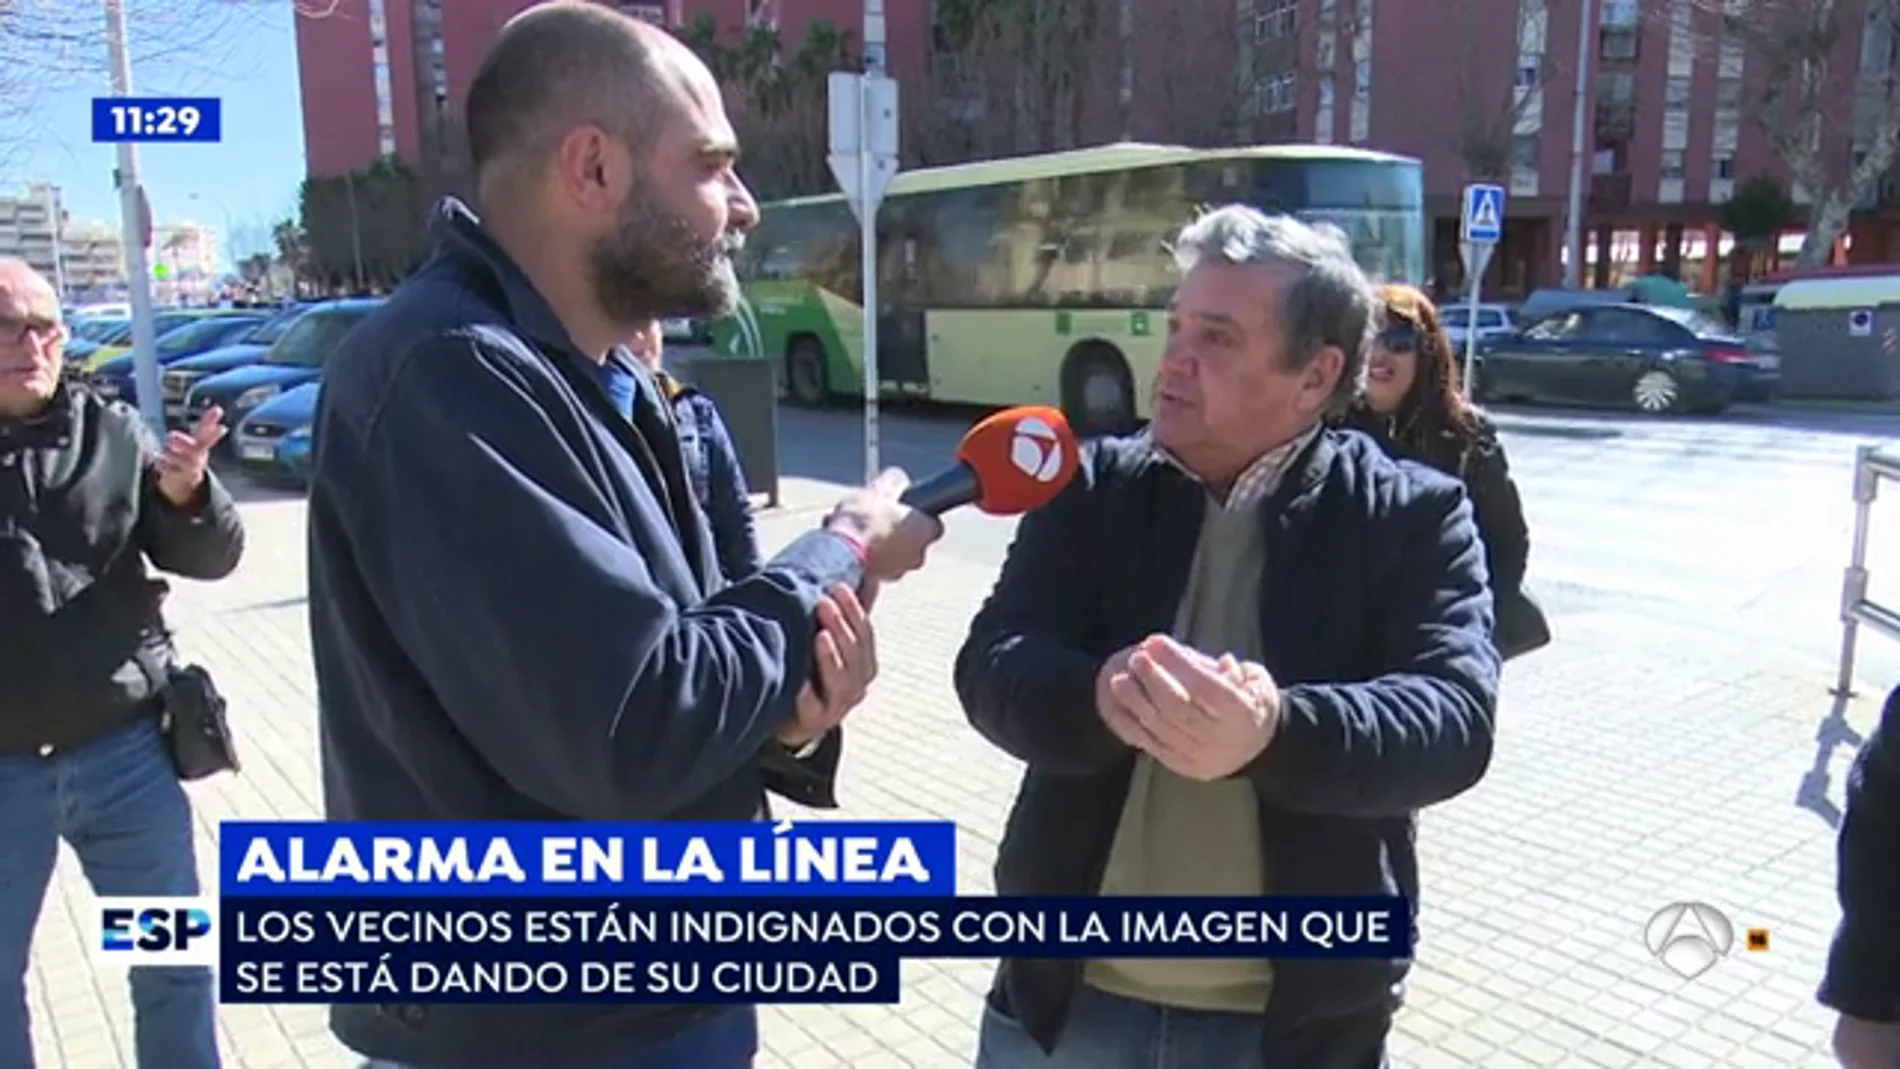  Los vecinos de La Línea de la Concepción están indignados con la imagen de la ciudad: "Es una realidad, pero no hay que generalizar"